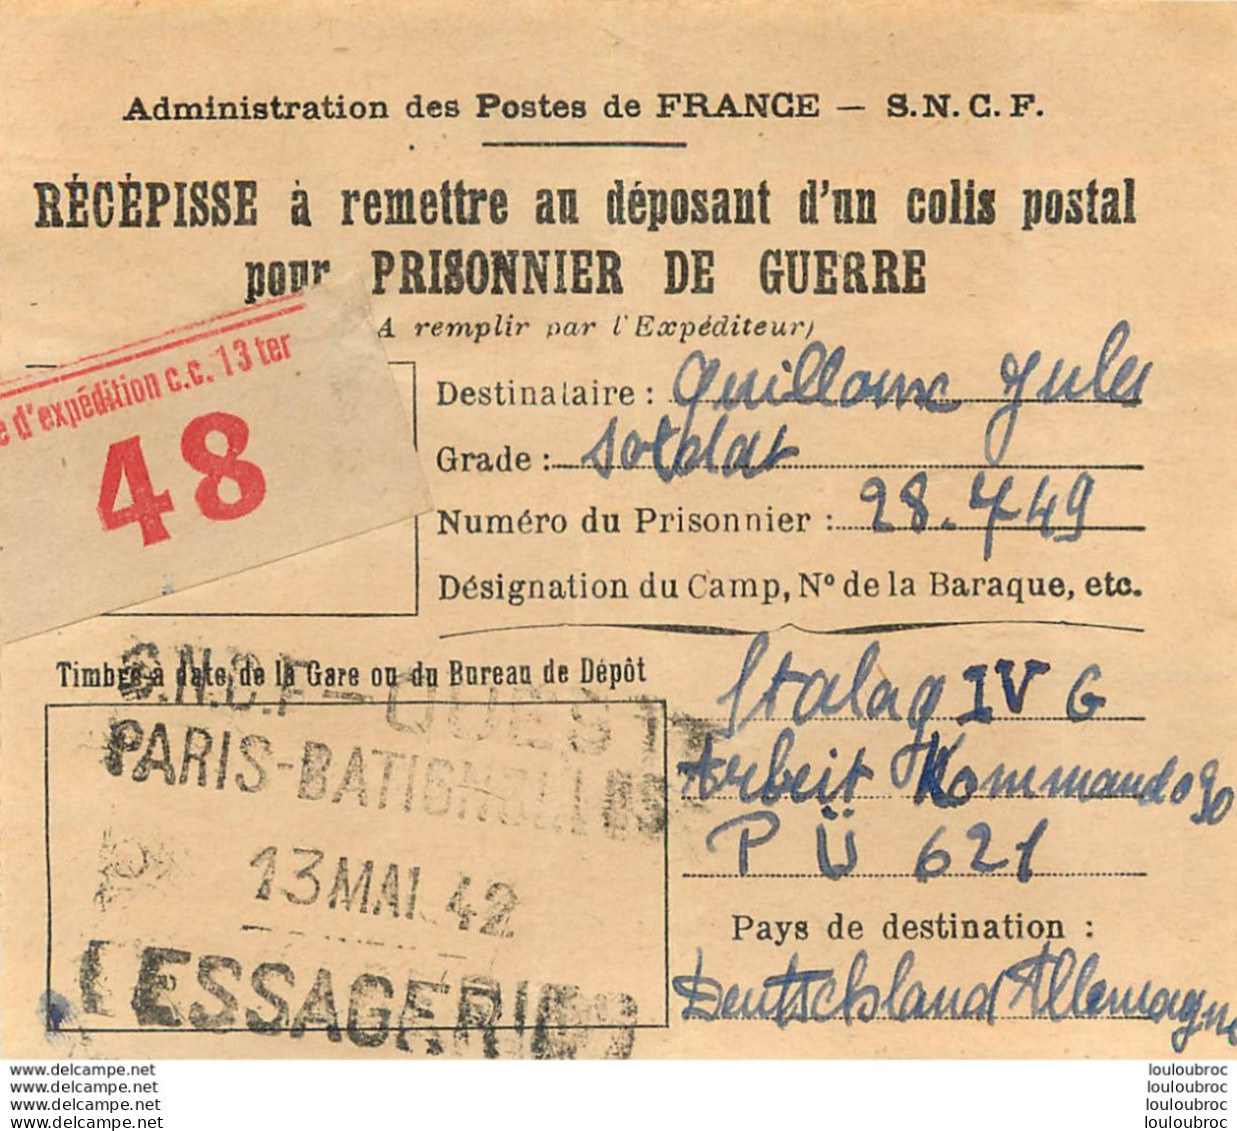 RECEPISSE D'UN COLIS POSTAL POUR PRISONNIER DE GUERRE STALAG IV G SNCF PARIS BATIGNOLLES 05/42 - 2. Weltkrieg 1939-1945